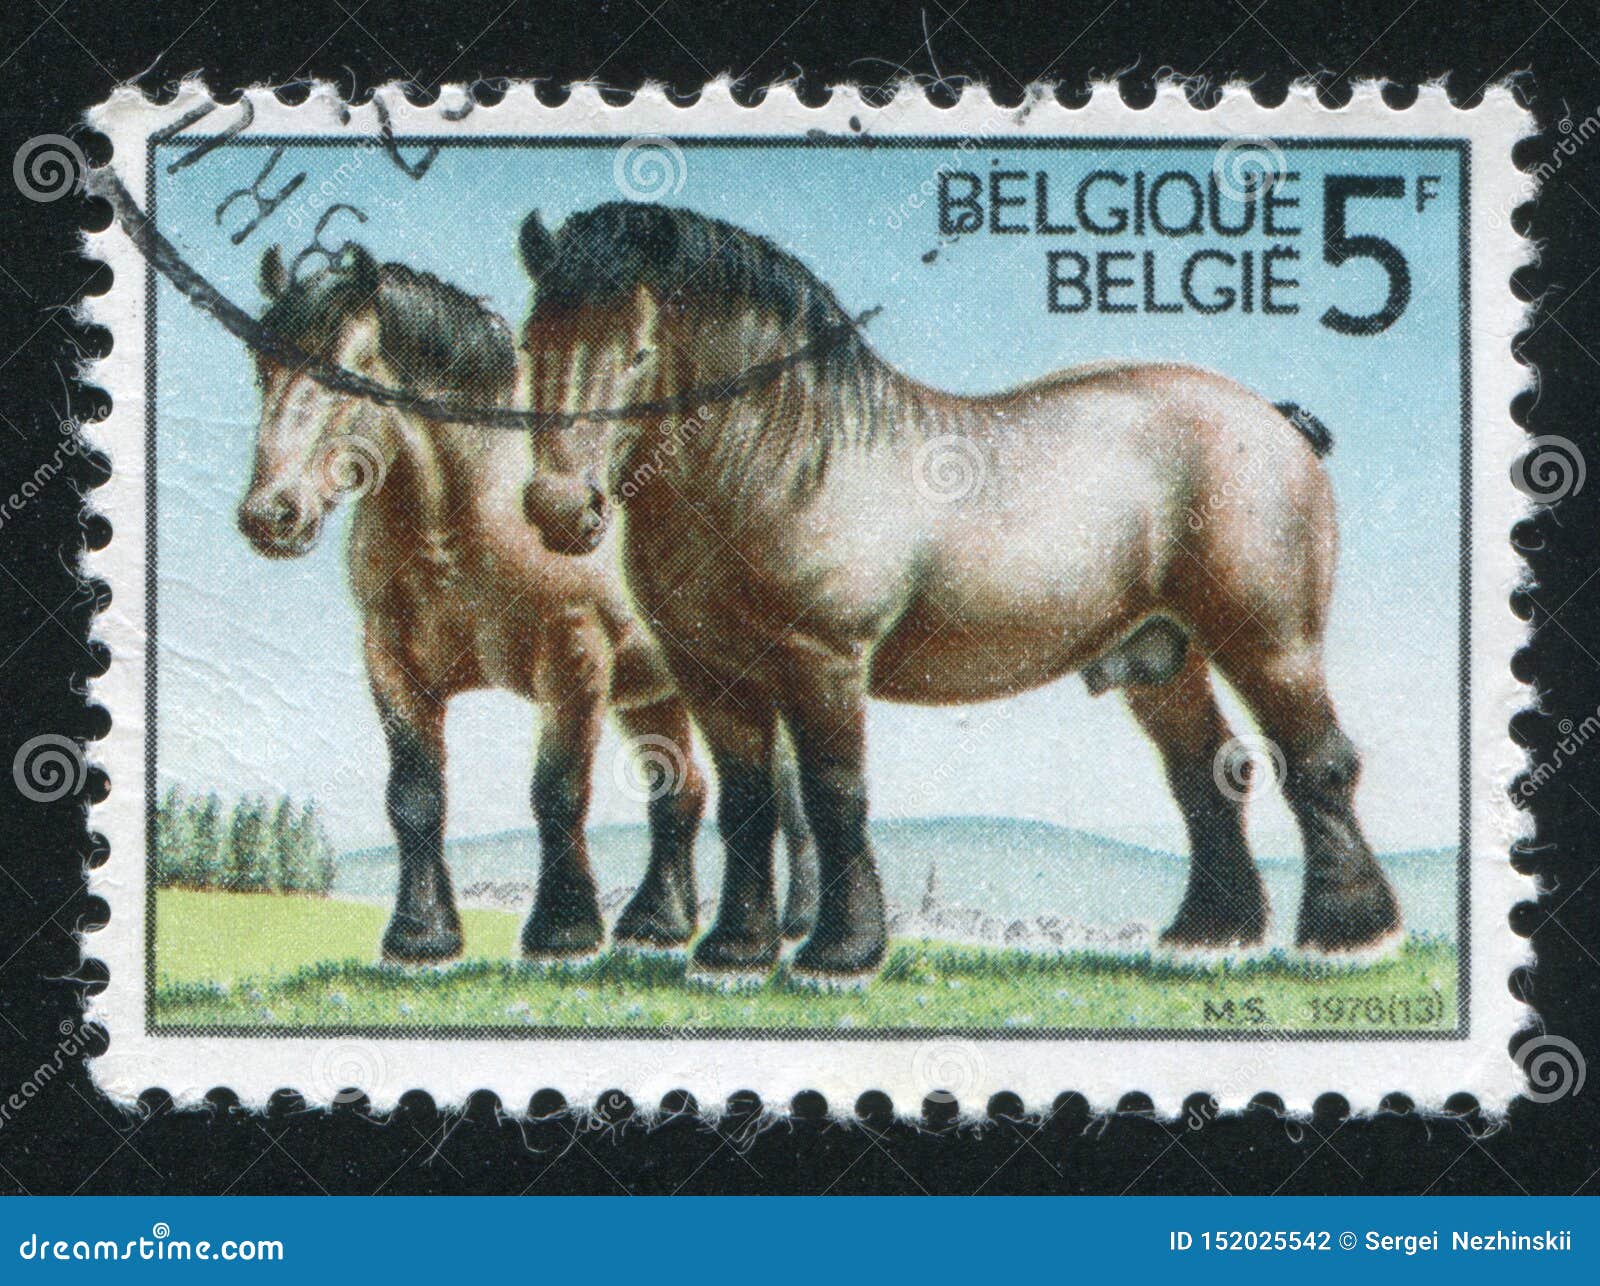 Лошадка марка. Лошади на почтовых марках. Марка с лошадкой. Породы лошадей с фотографиями. Антикварные марки лошадь конь.